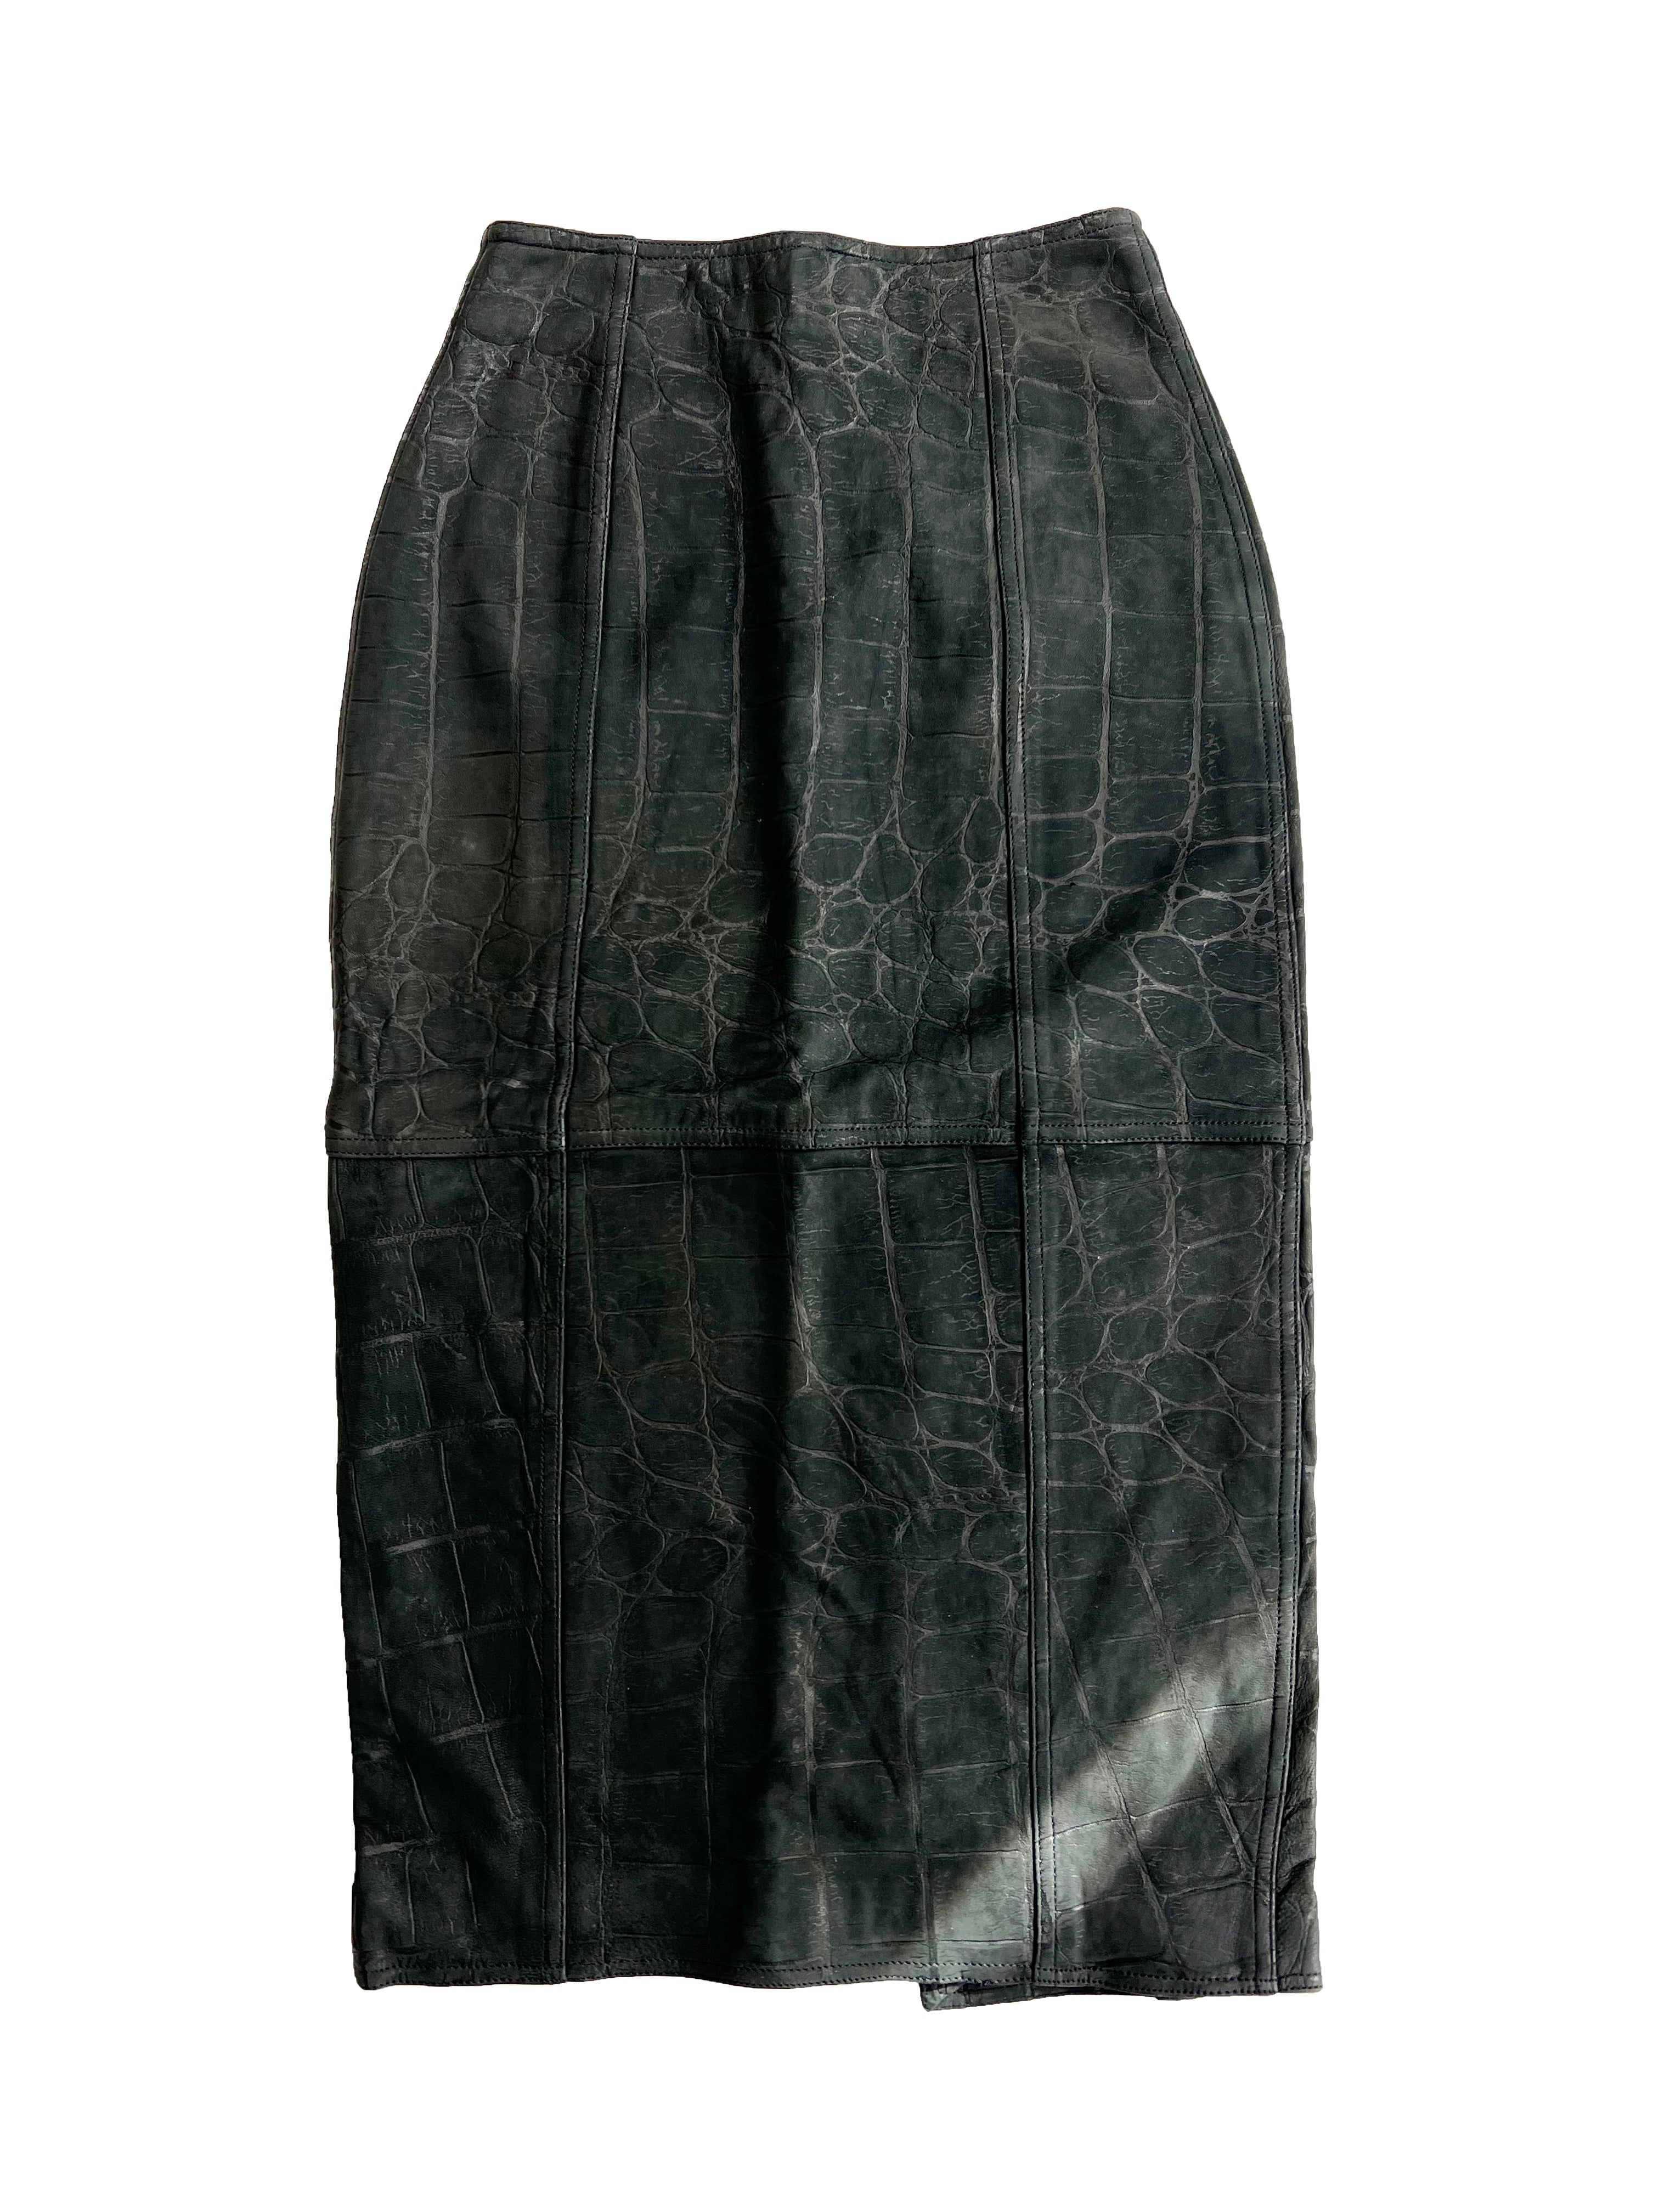 Pelle Pelle Leather Crocodile Print Skirt BNWT 90's